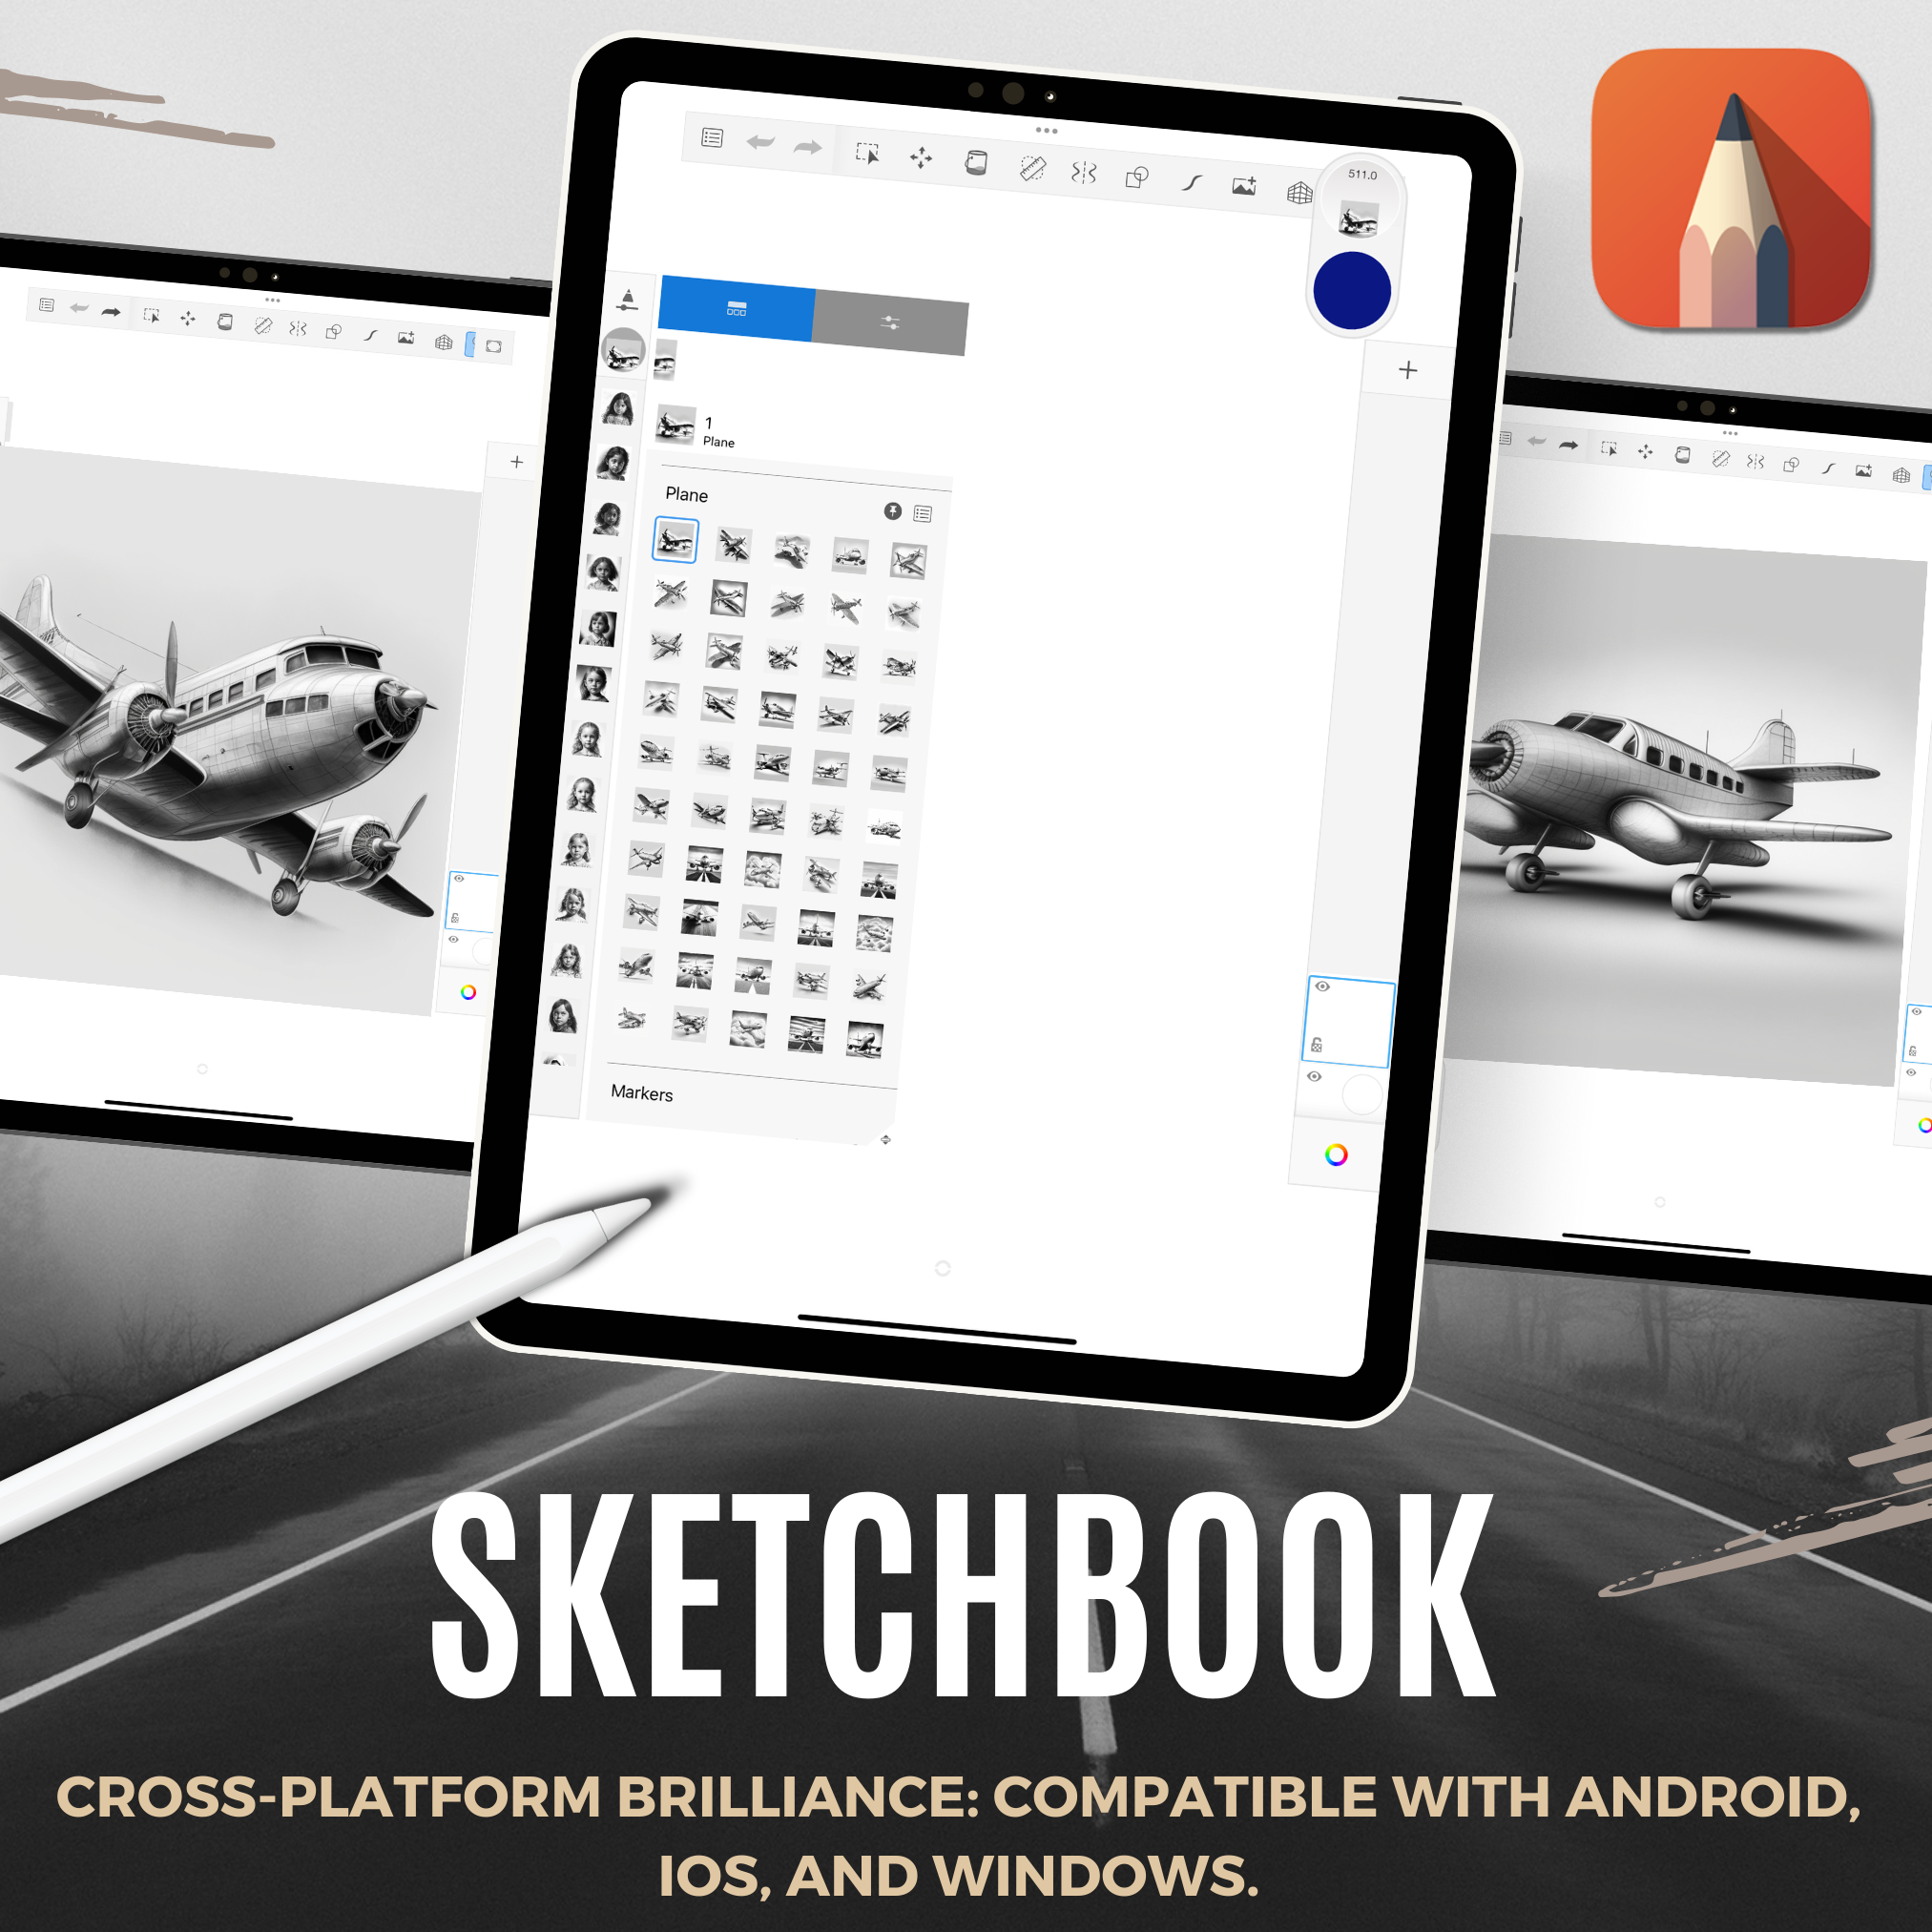 Aeroplanes Digital Design Collection: 50 Procreate & Sketchbook Images